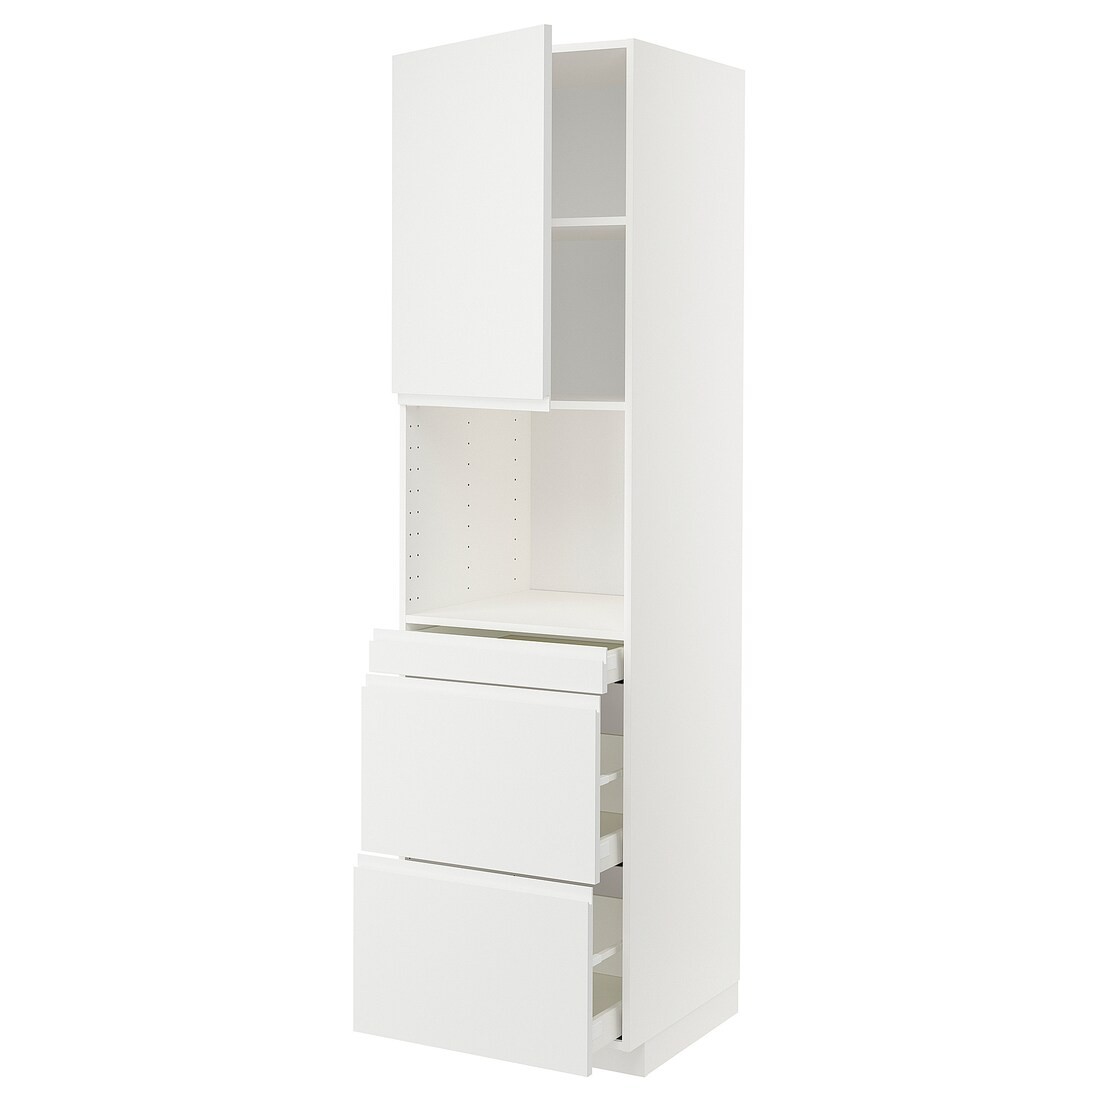 IKEA METOD МЕТОД / MAXIMERA МАКСИМЕРА Высокий шкаф для СВЧ / дверца / 3 ящика, белый / Voxtorp матовый белый, 60x60x220 см 59460896 | 594.608.96